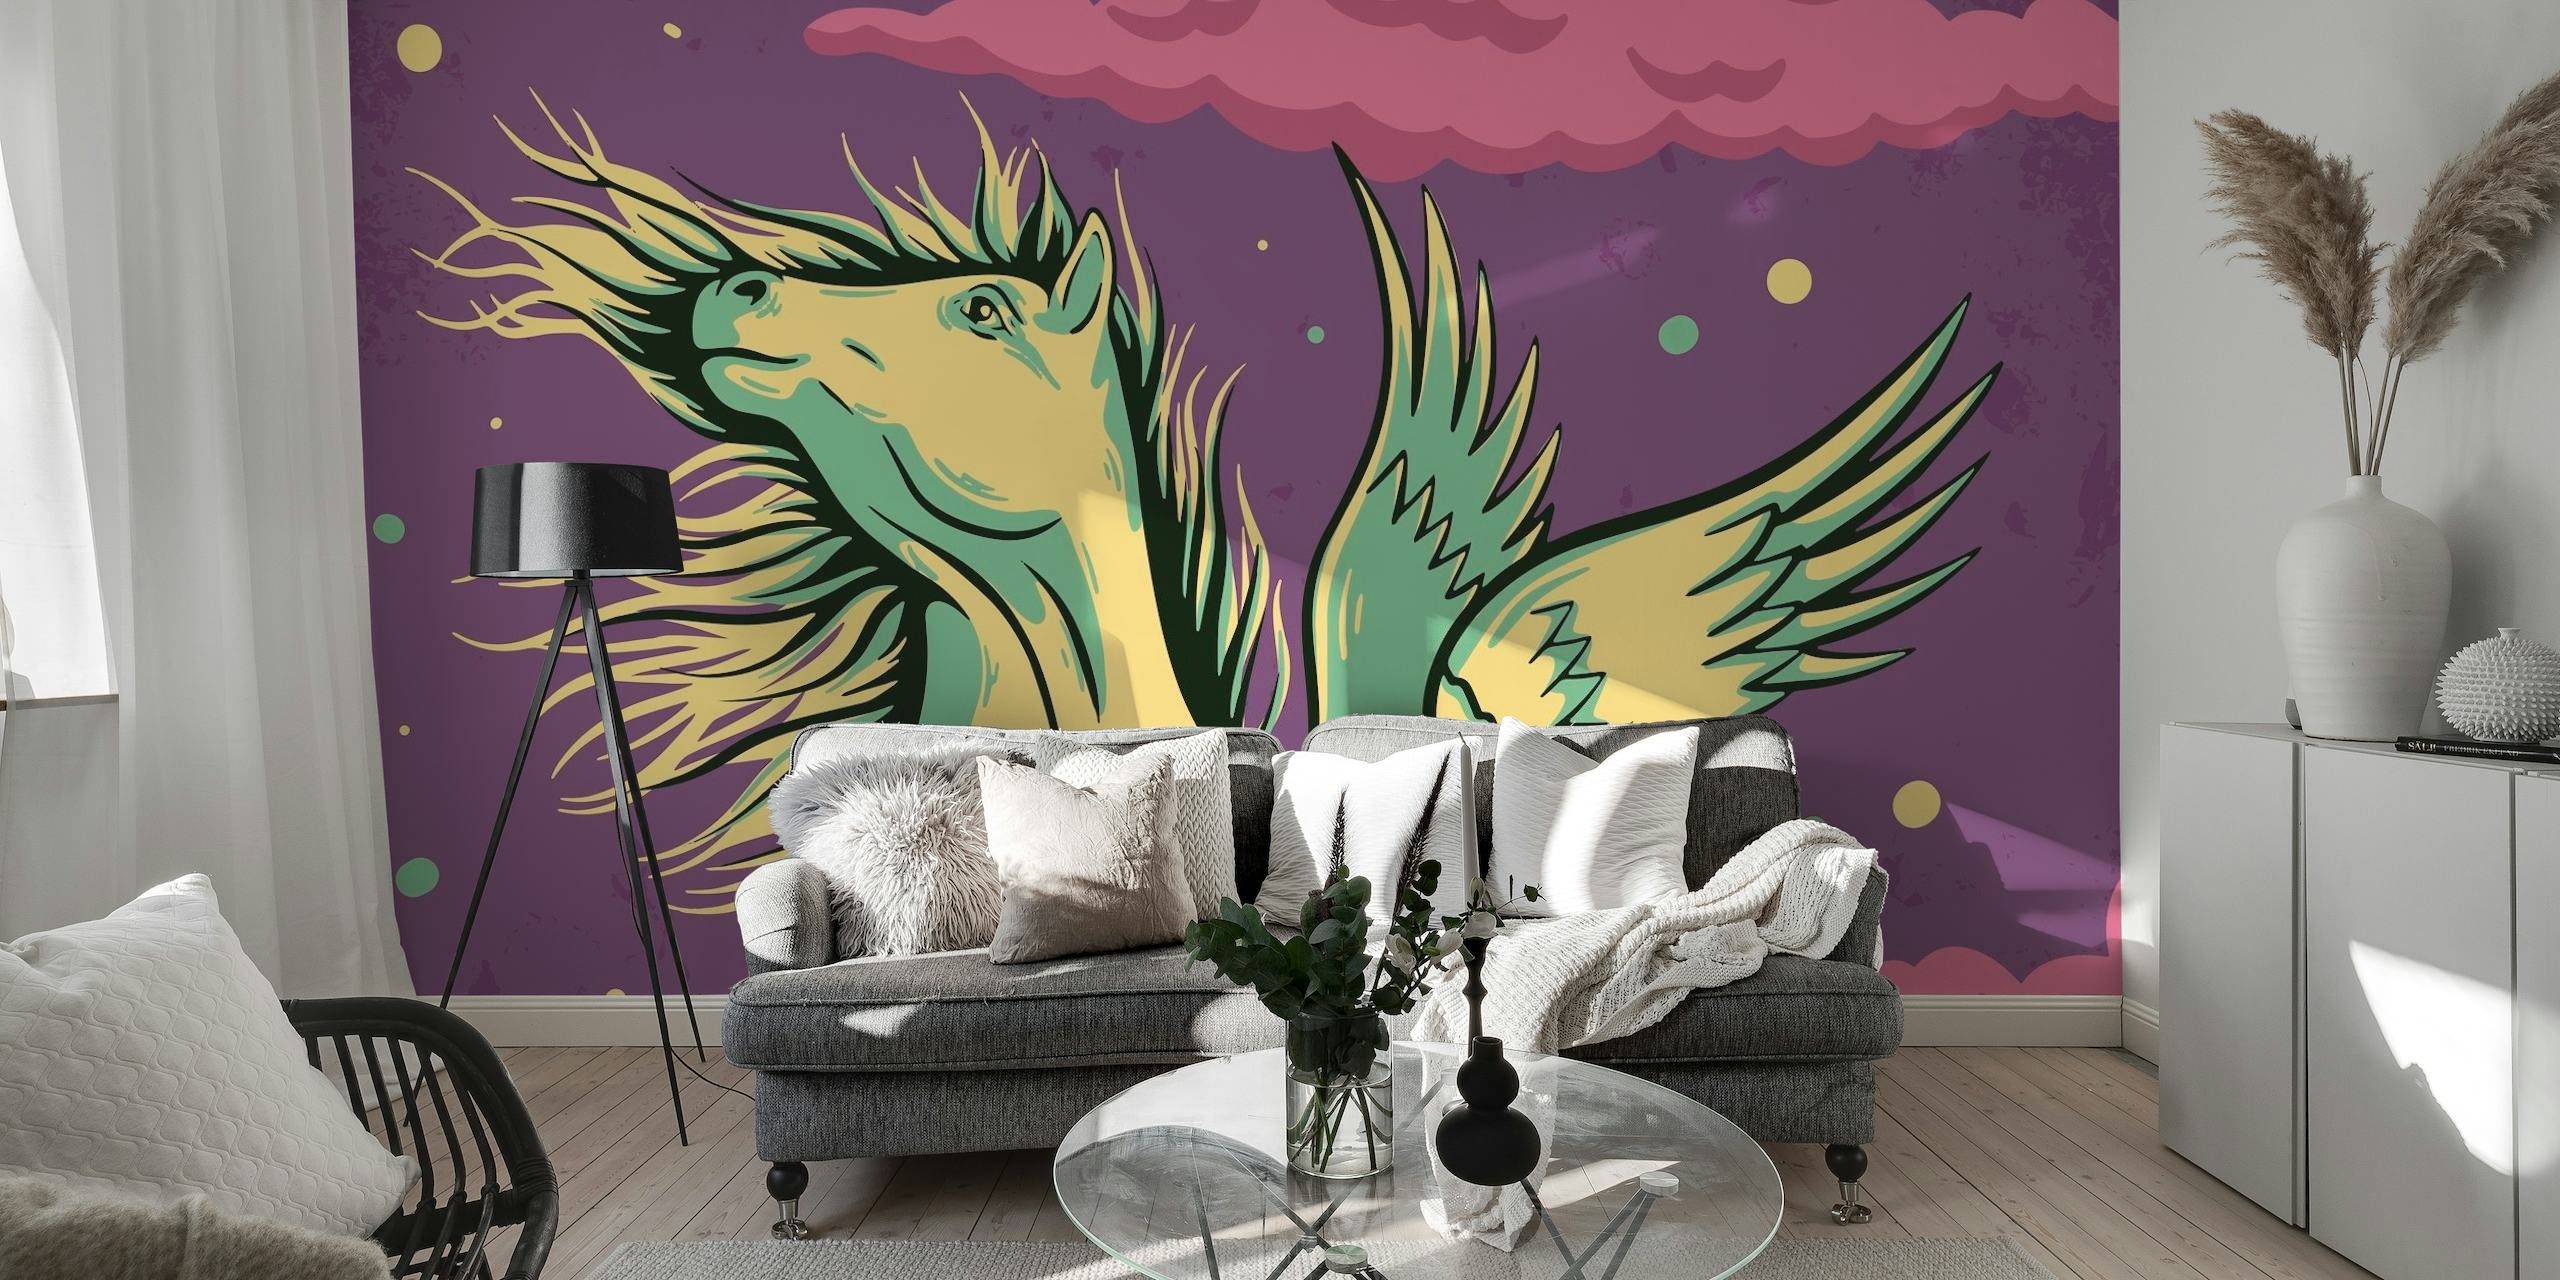 Pegasus zidna slika s mitskim konjem na zvjezdano ljubičastom nebu